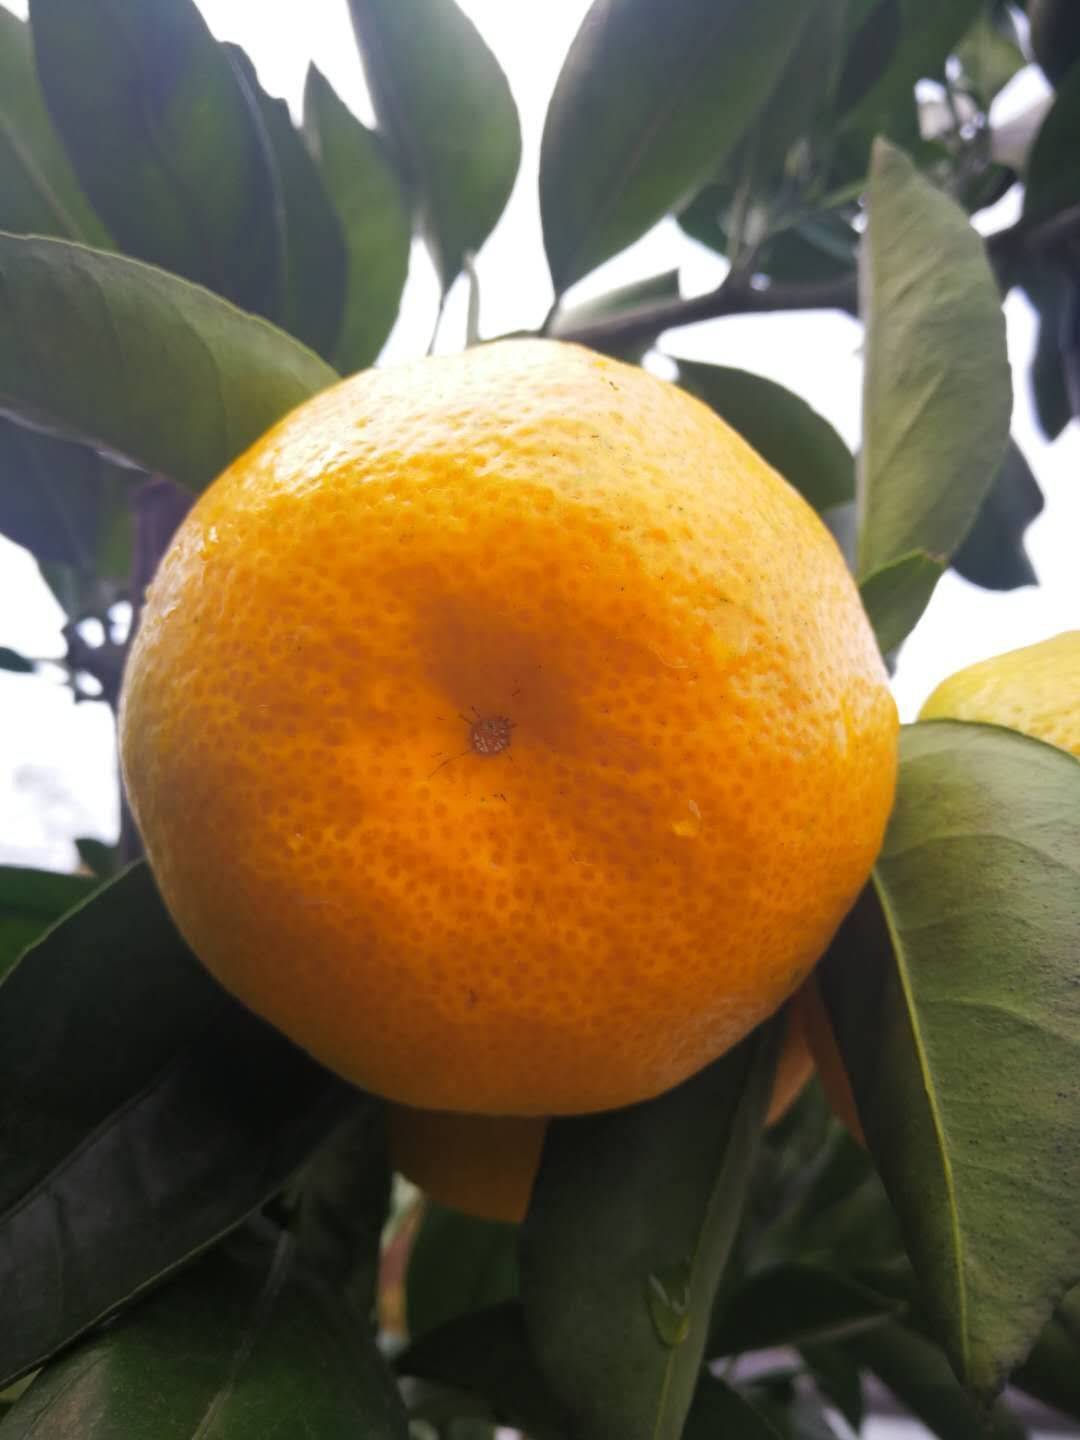 13886725378供应宜昌柑橘:蜜桔:叶桔:桔子。秭归脐橙:纽荷尔脐橙:长虹脐橙：橙子